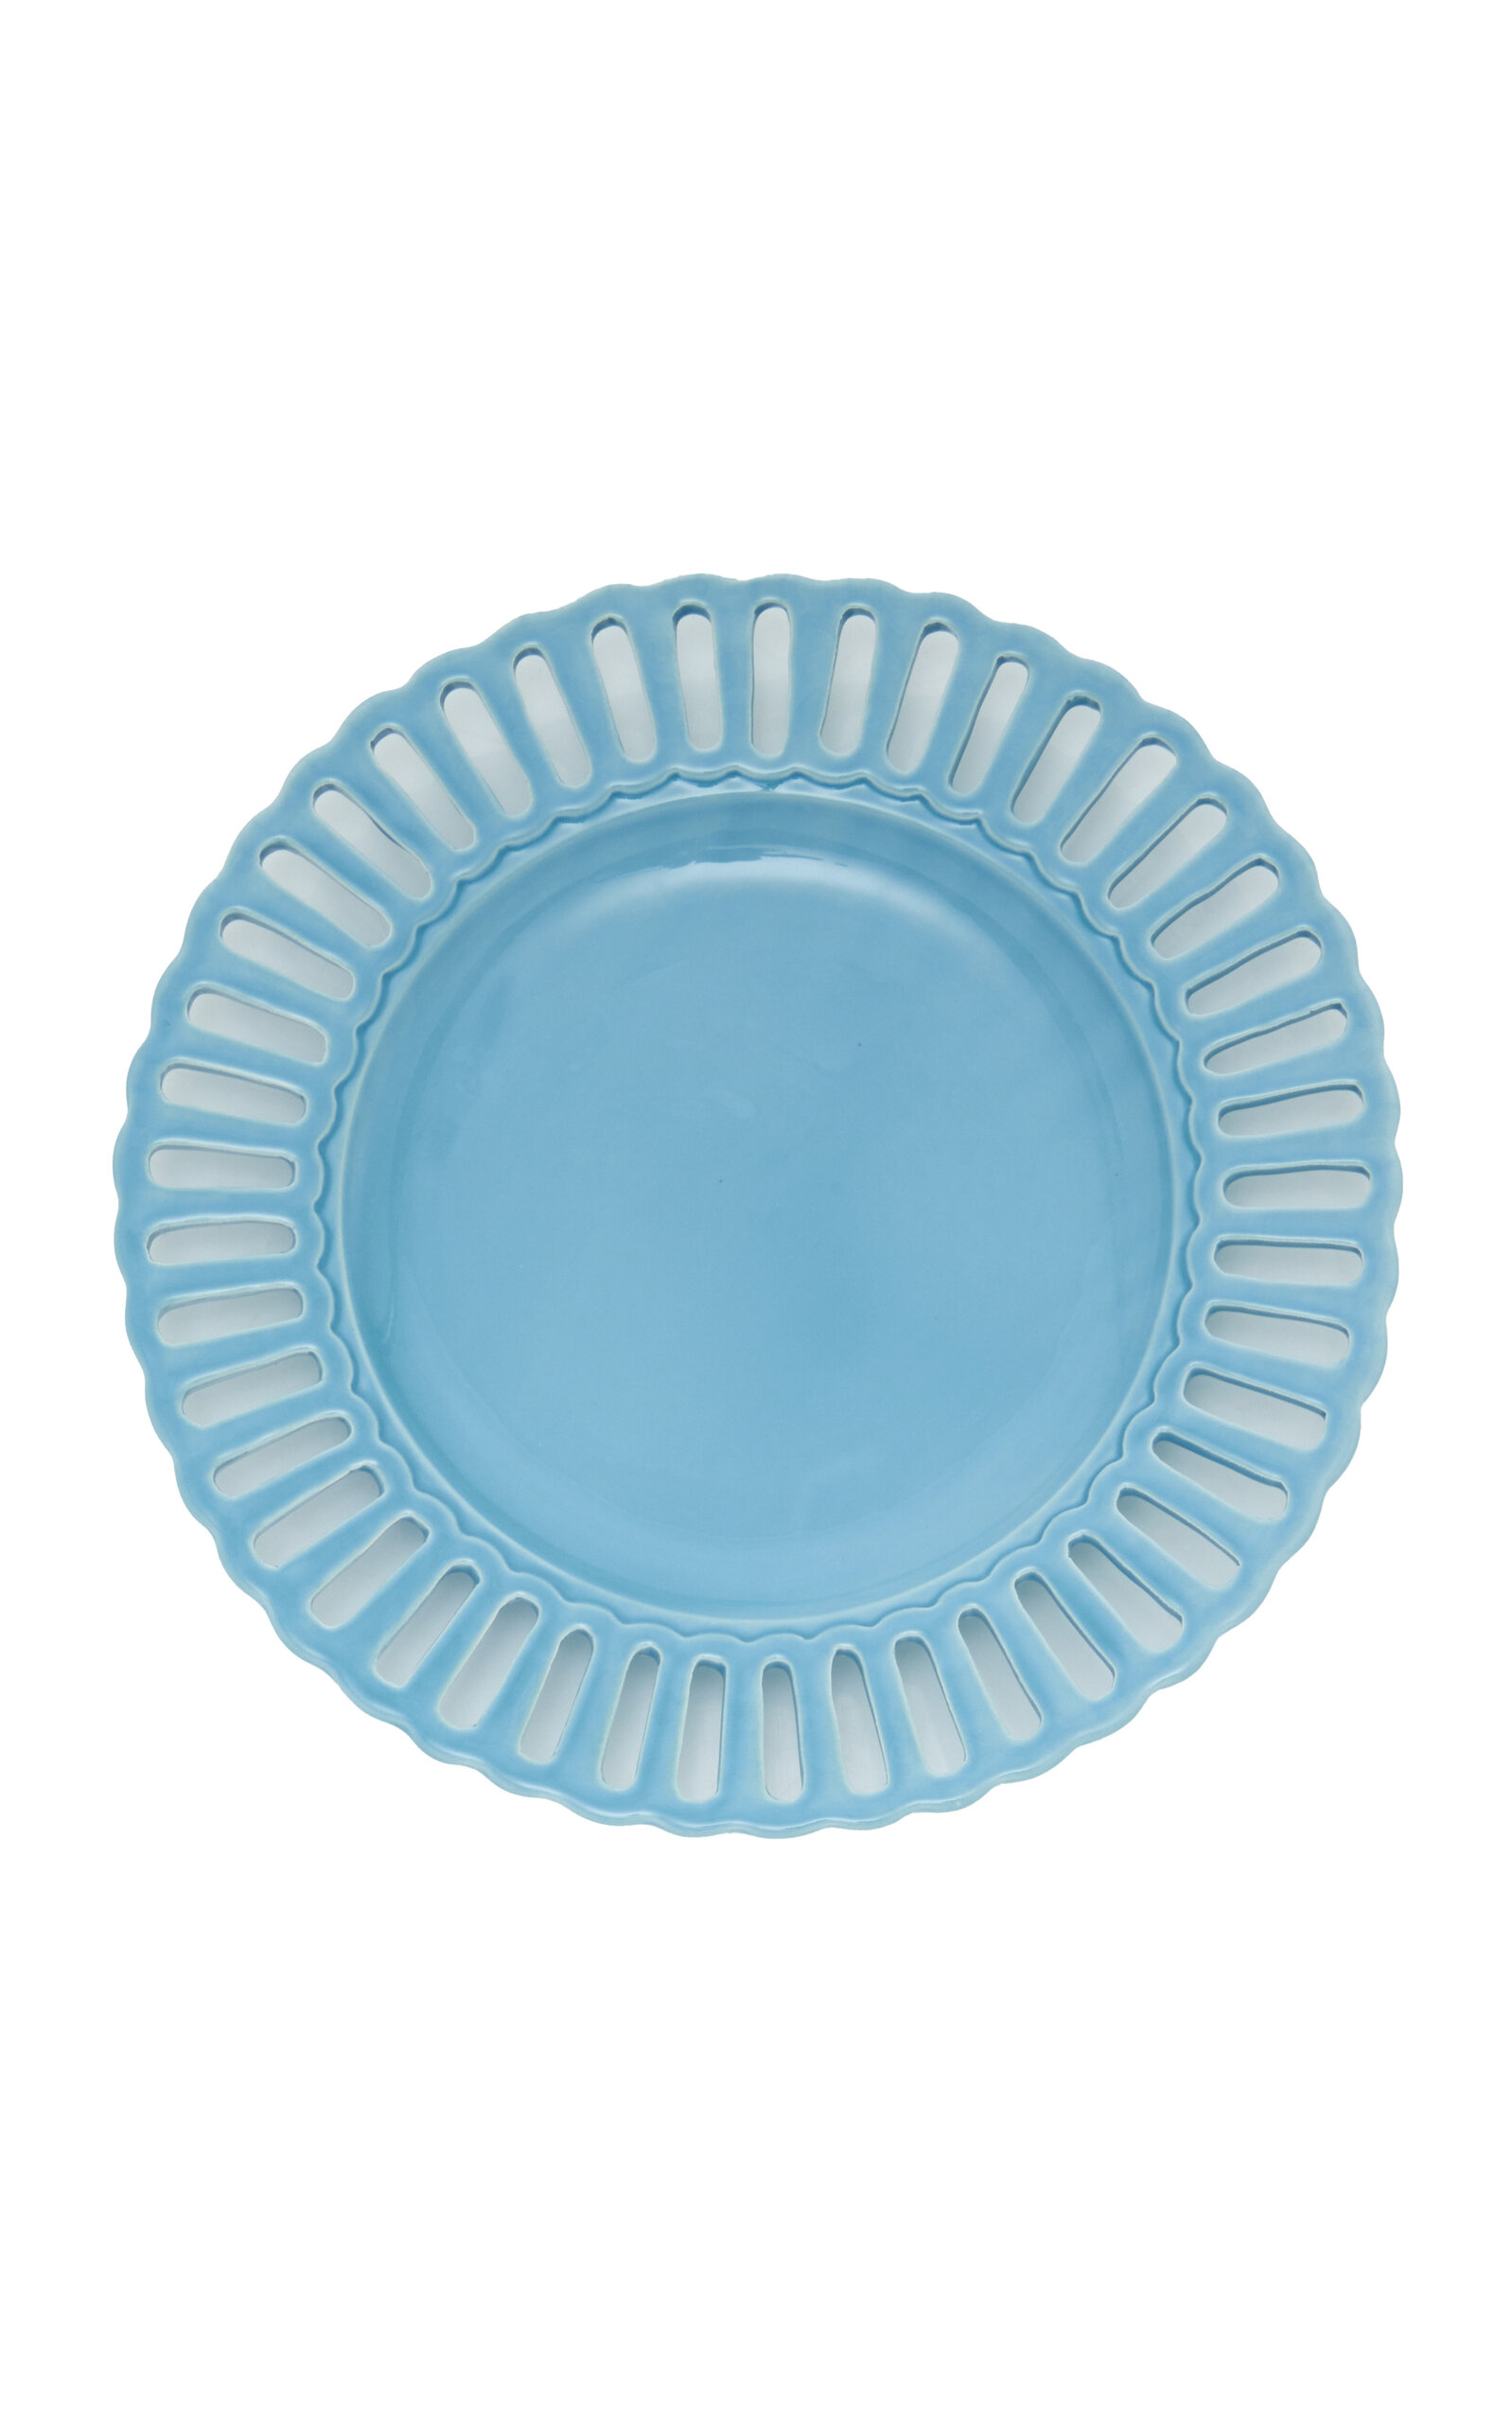 Moda Domus Balconata Creamware Dinner Plate In Blue